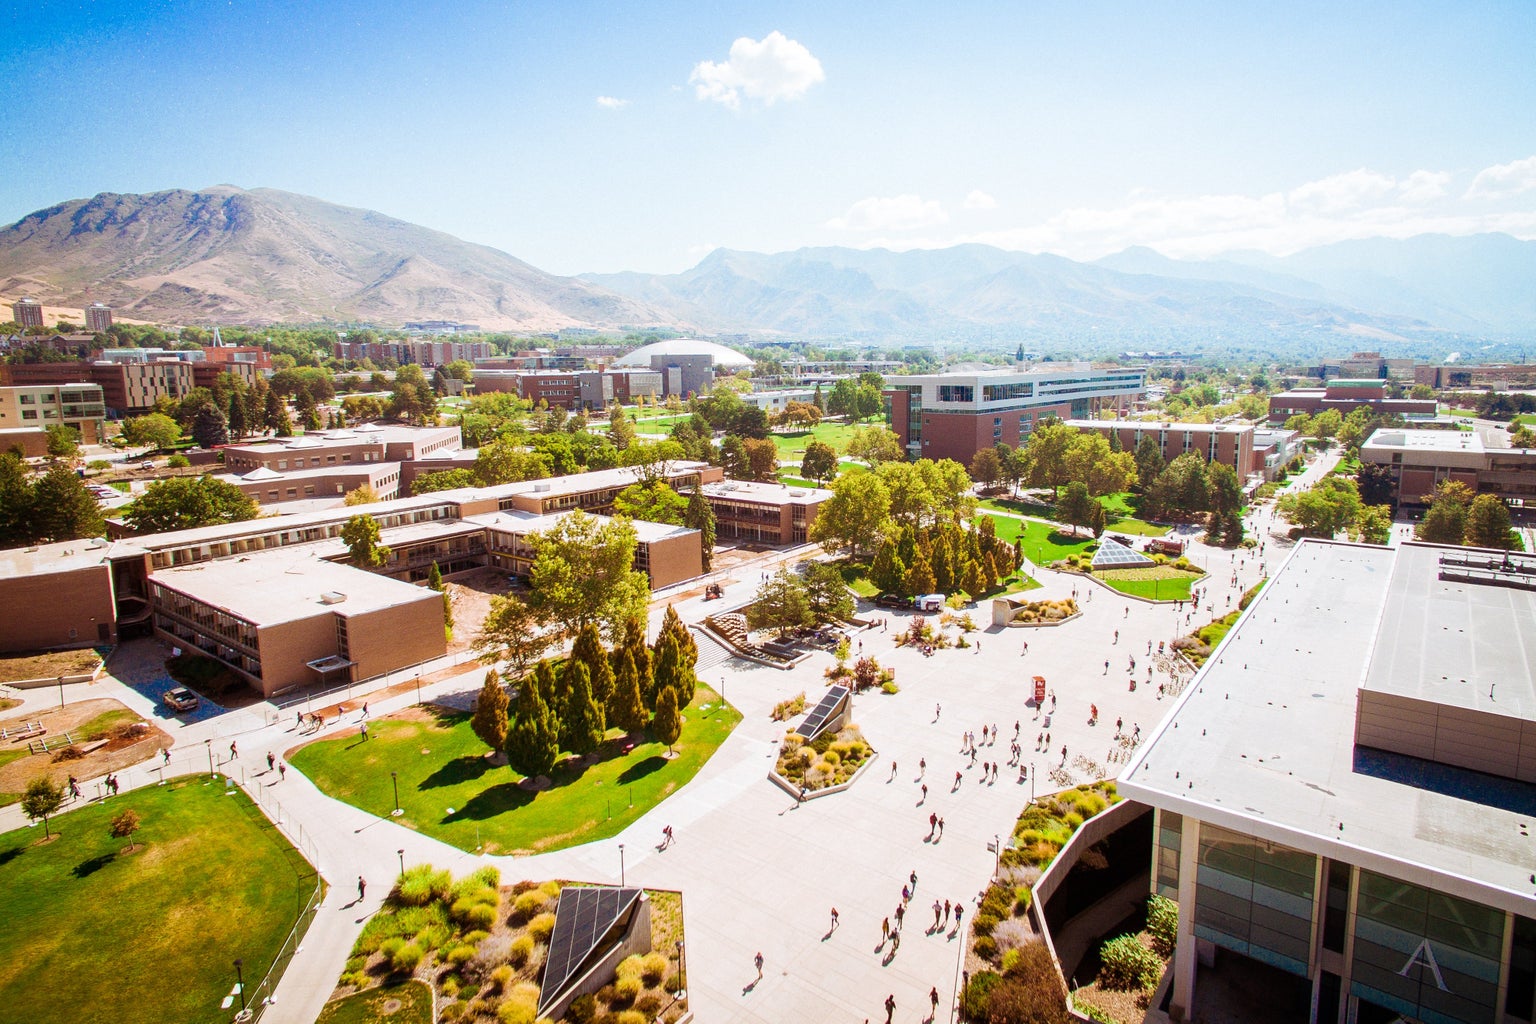 University of Utah aerial view